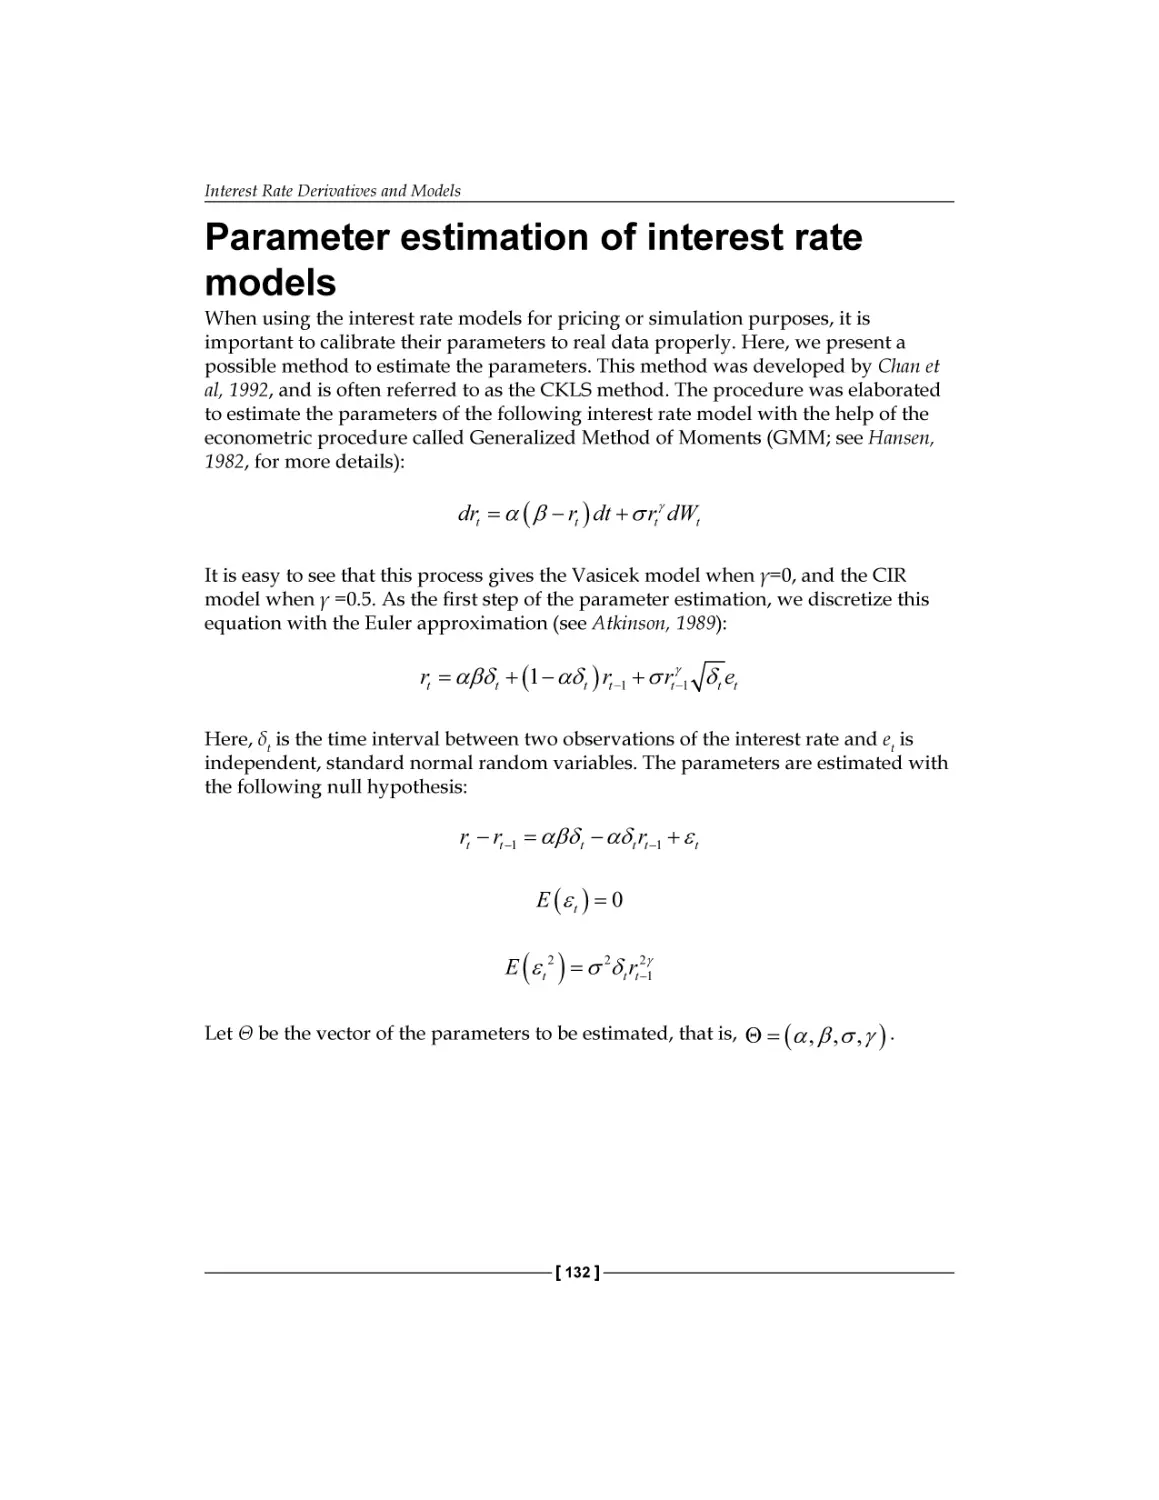 Parameter estimation of interest rate models